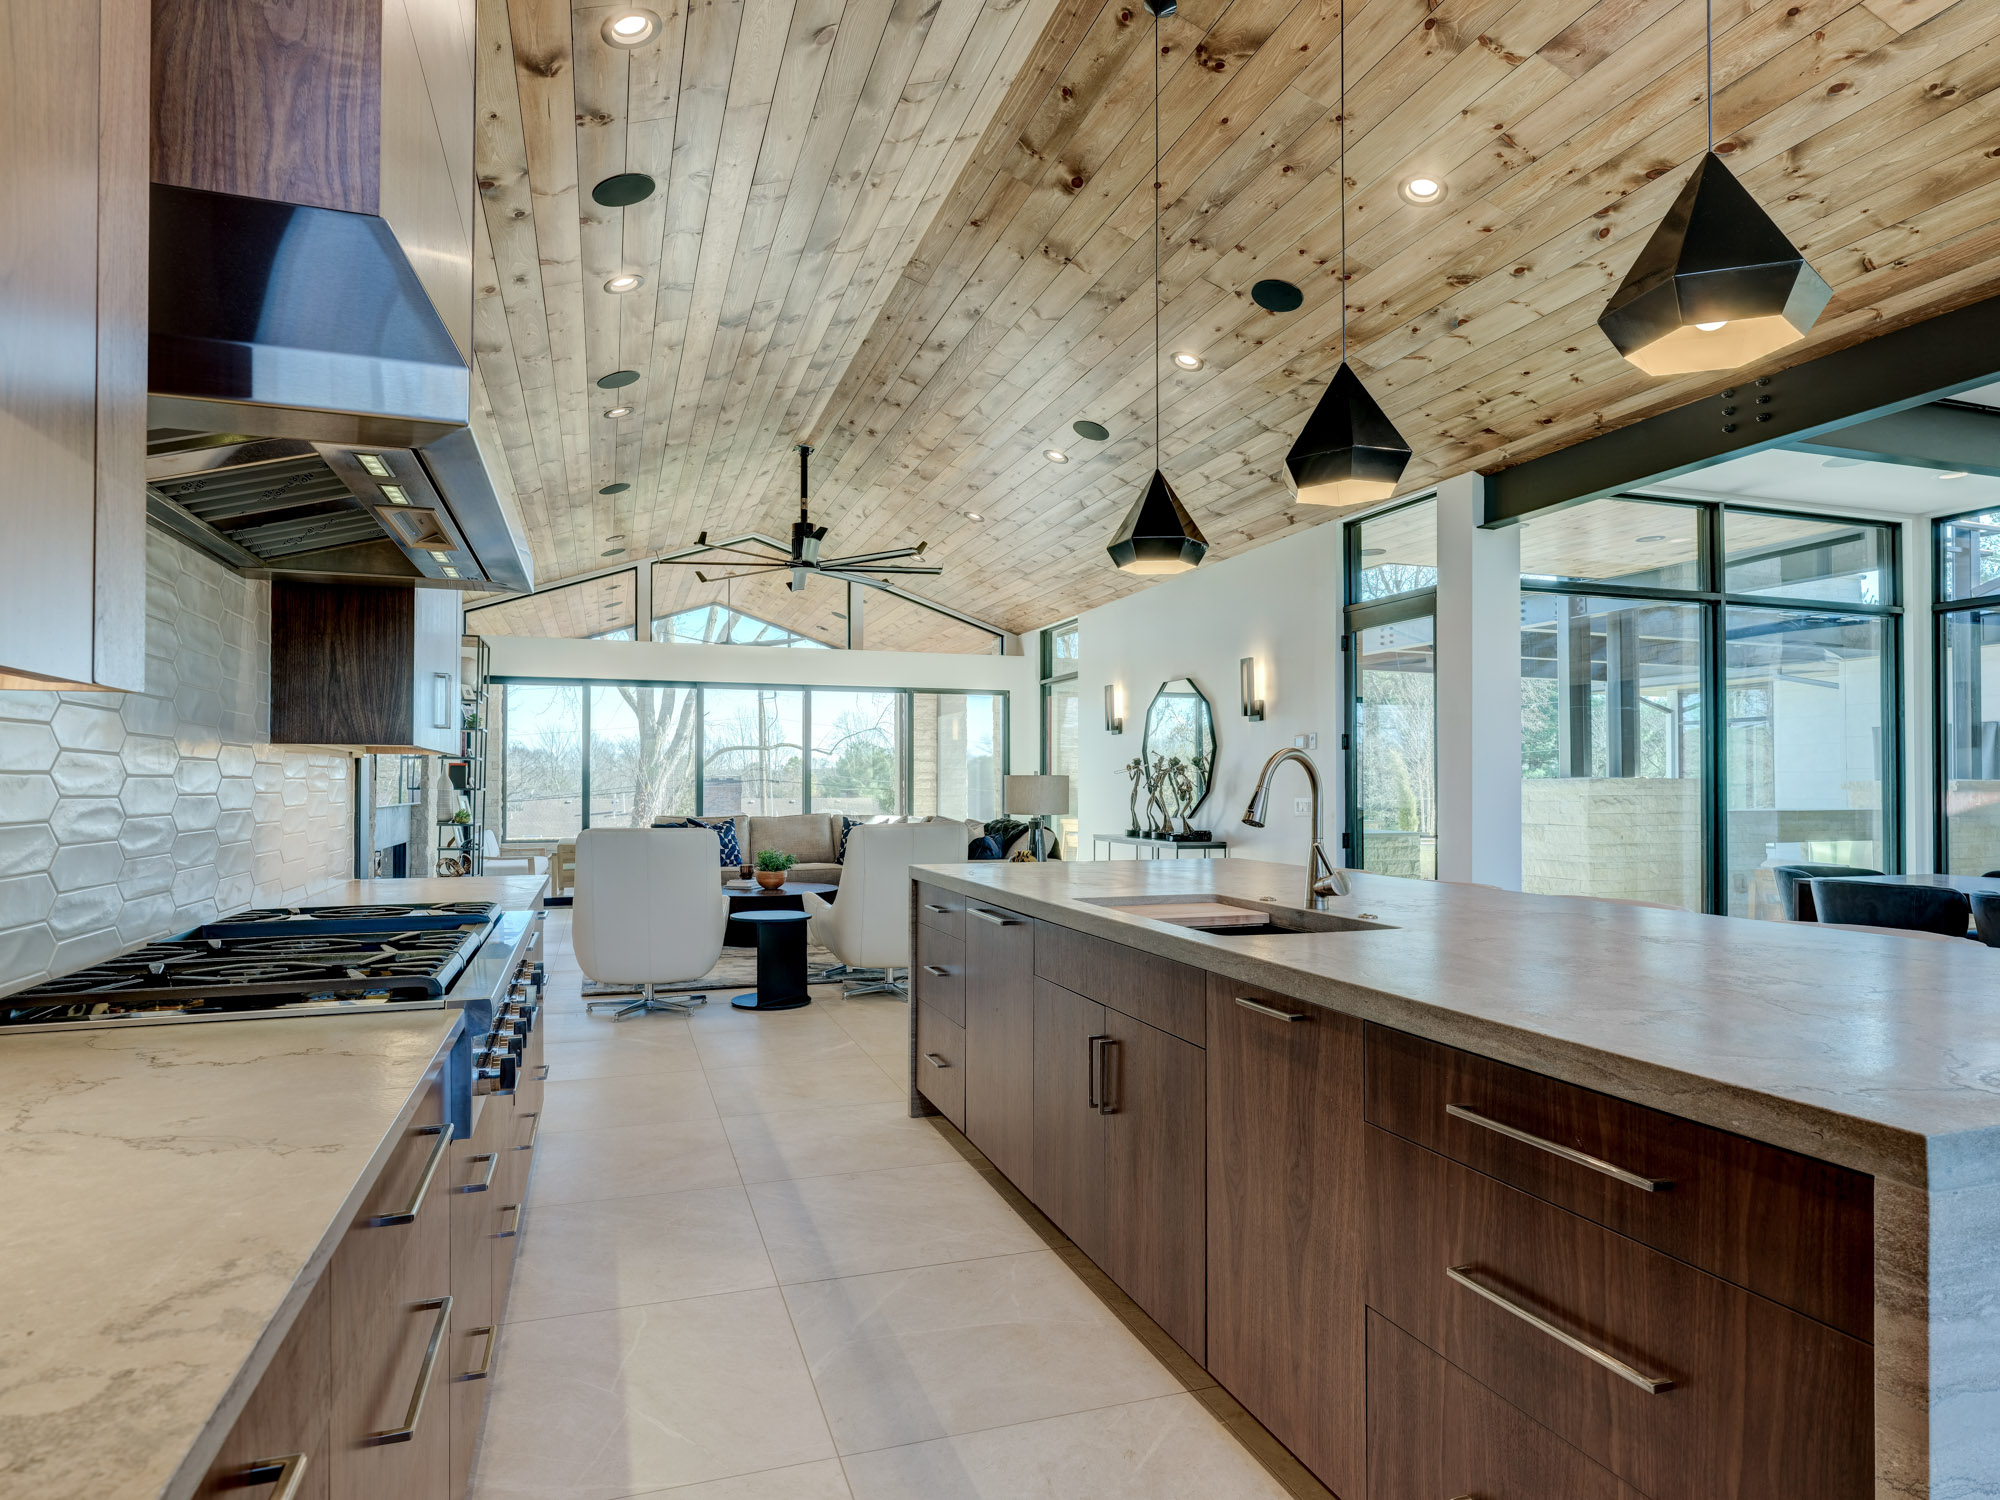 Natural Bridge Home Ellecor Interior Design 46 Kitchen Stove View